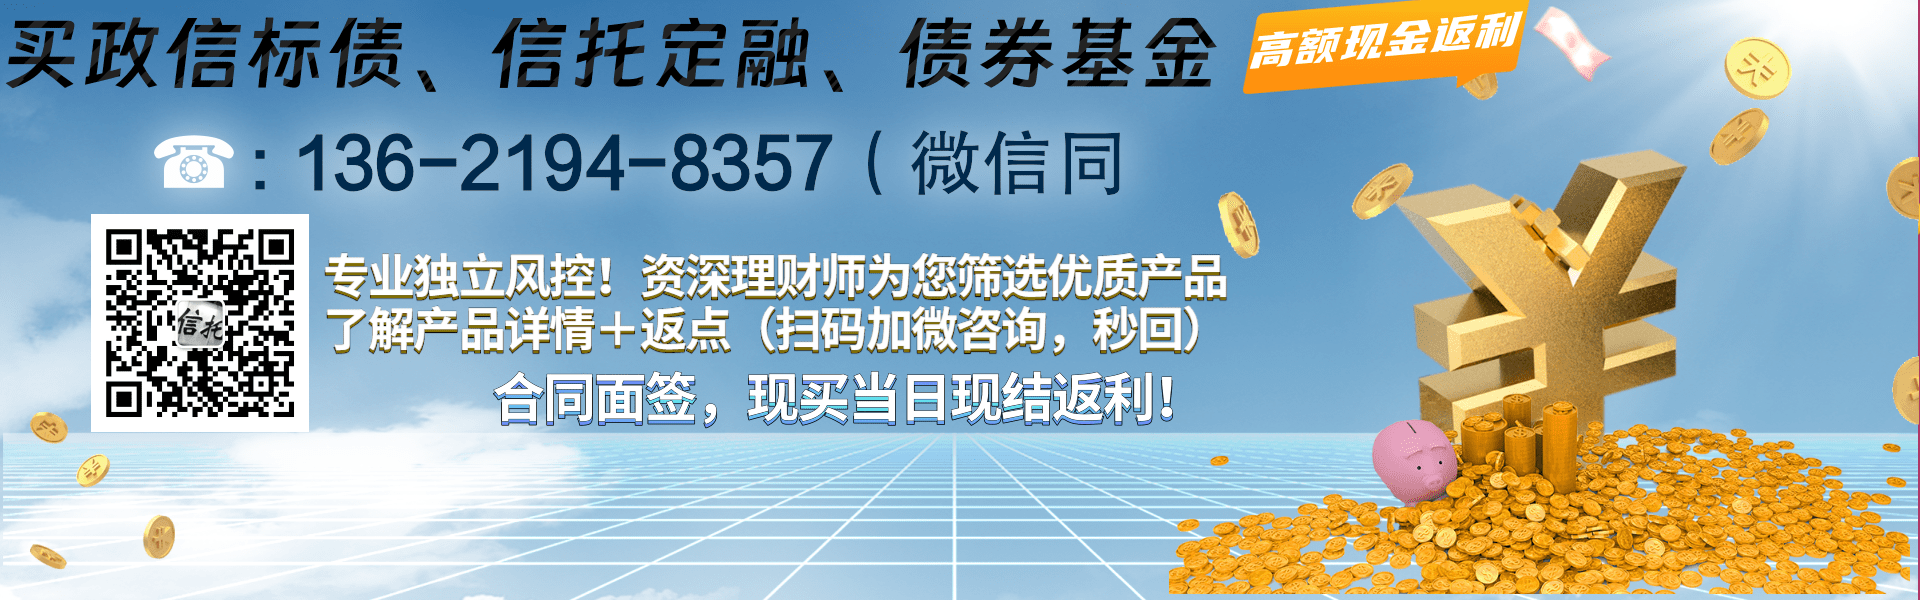 央企信托-306号泰州永续债集合资金信托计划